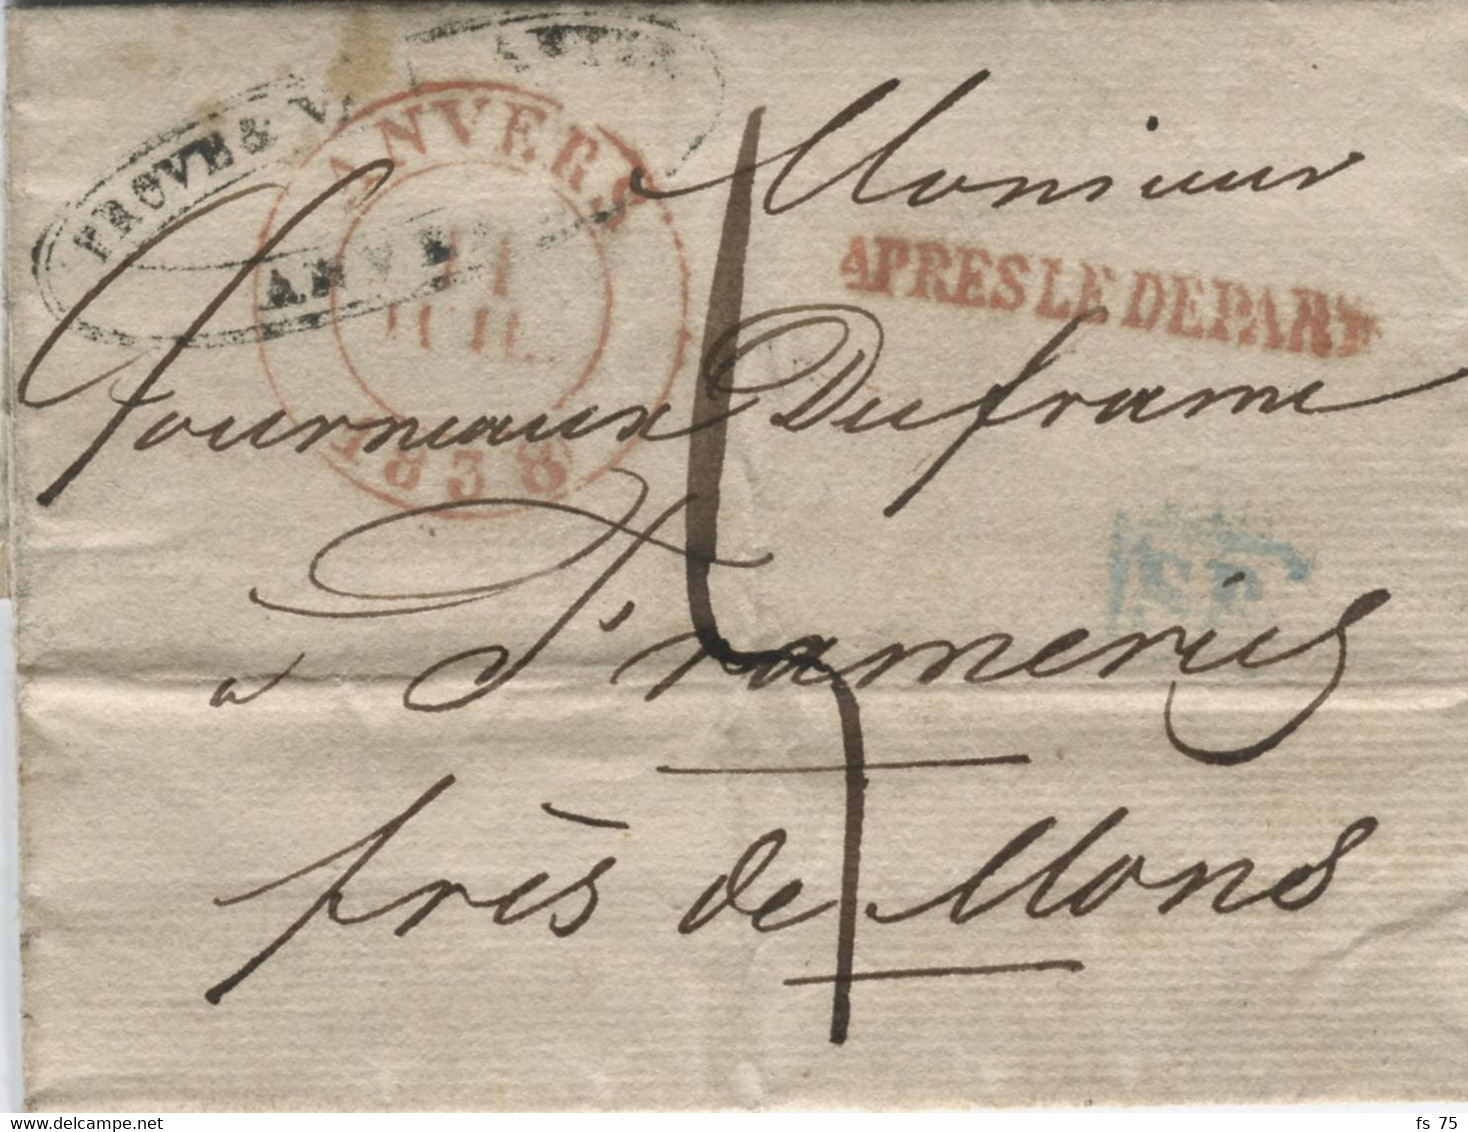 BELGIQUE - ANVERS + APRES LE DEPART SUR LETTRE SANS CORRESPONDANCE, 1838 - 1830-1849 (Unabhängiges Belgien)